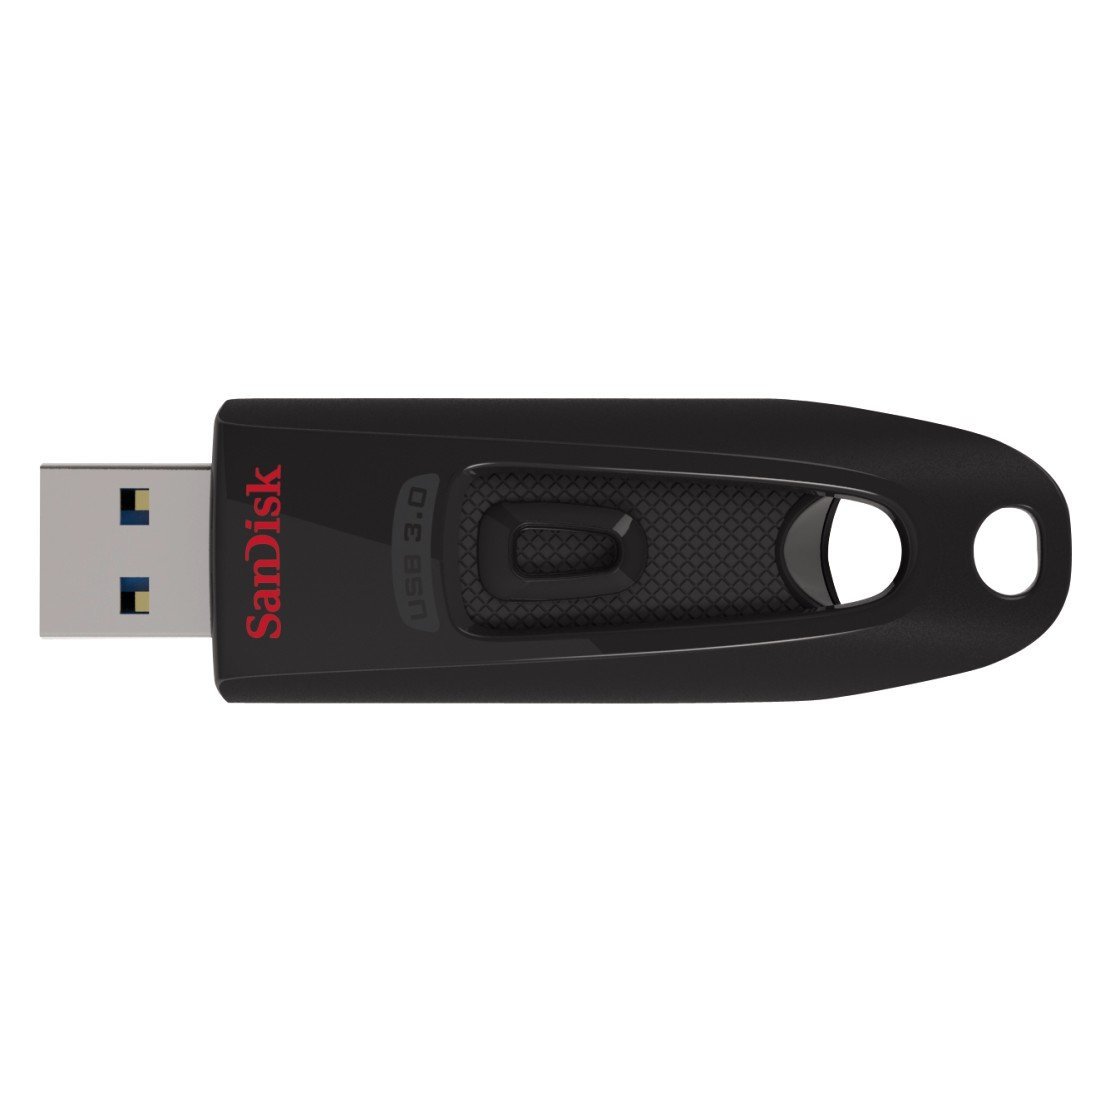  Memorie USB Sandisk Ultra SDCZ48, 16GB, USB 3.0 